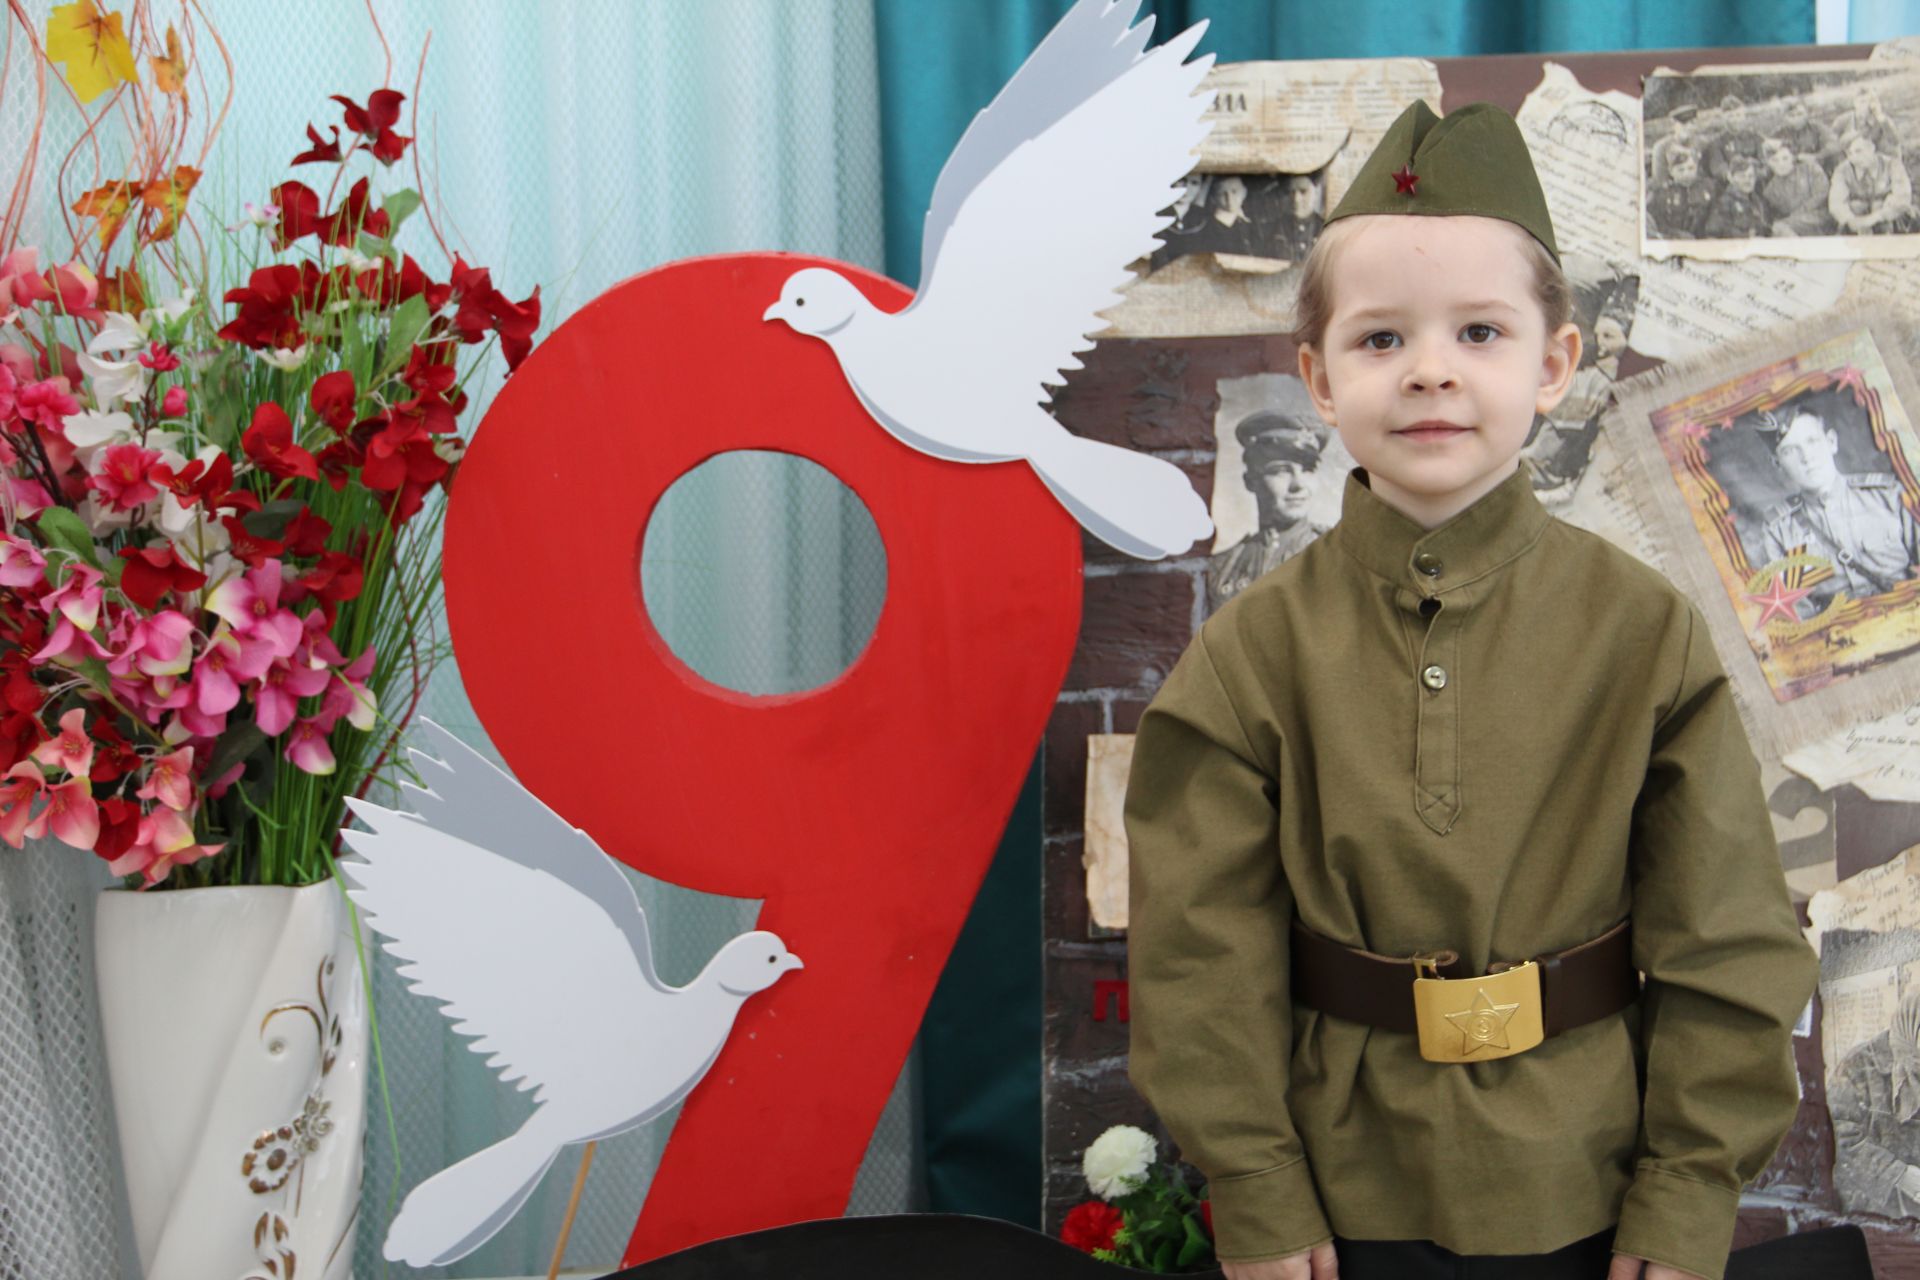 В Заинске стали известны имена победителей конкурса юных чтецов «Звонкое эхо Победы»